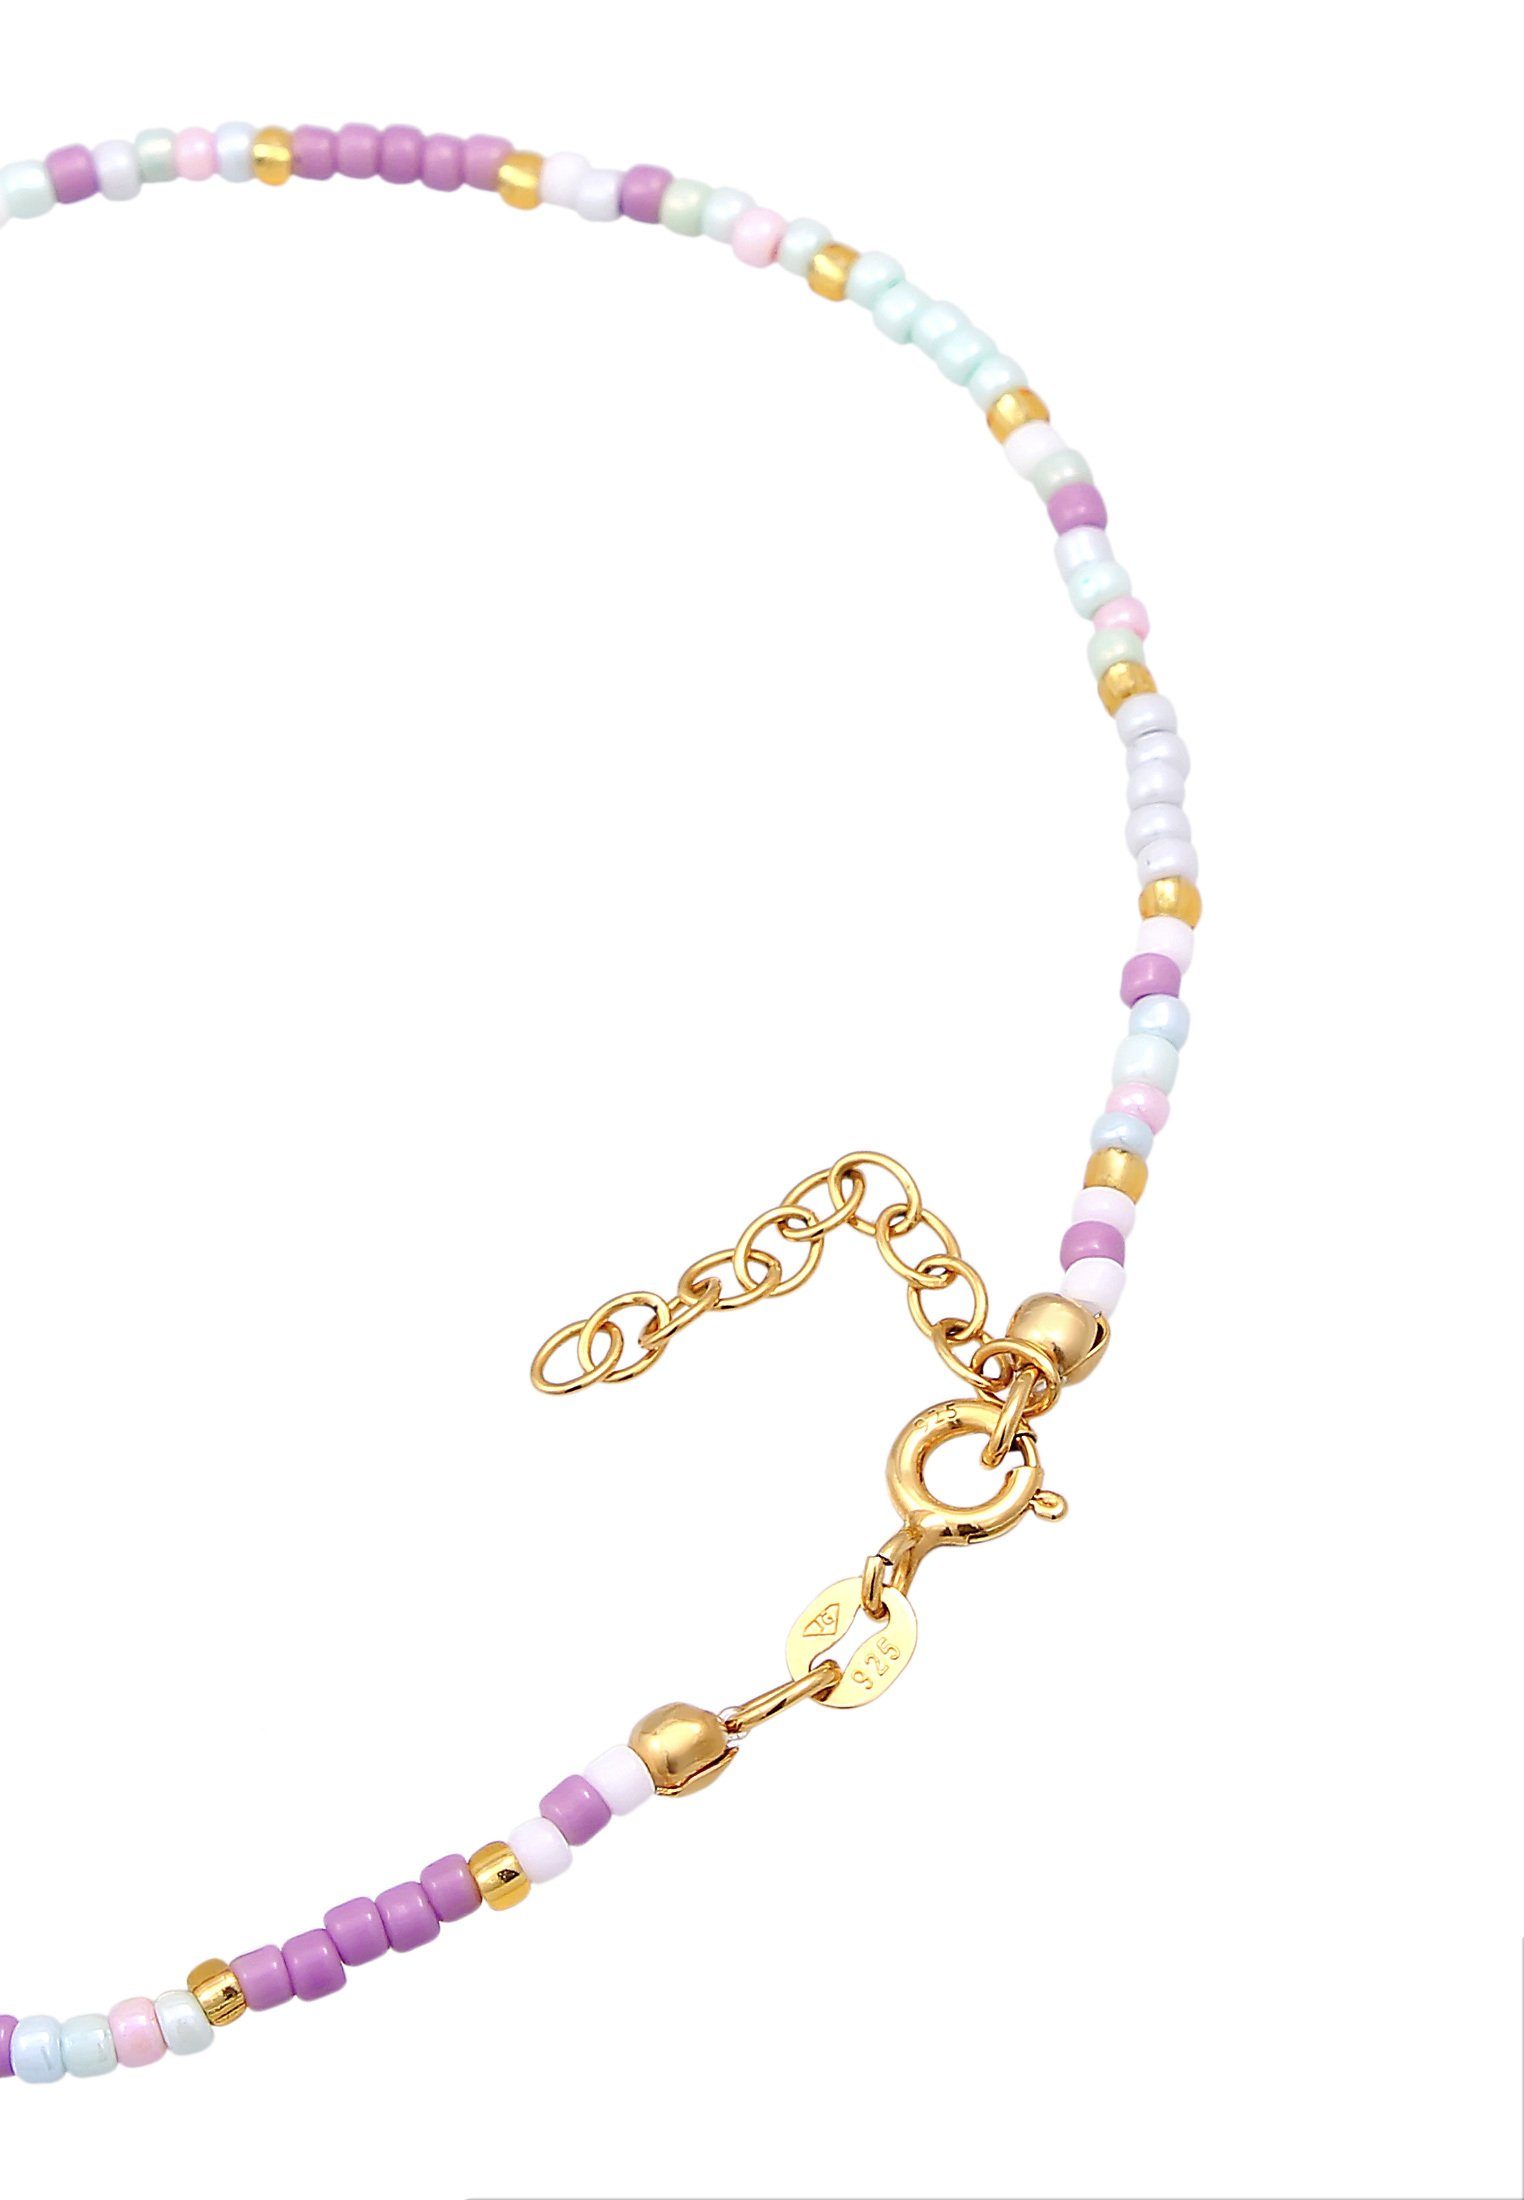 Elli Fußkette Herz Glas Beads Silber vergoldet Sommer Style 925